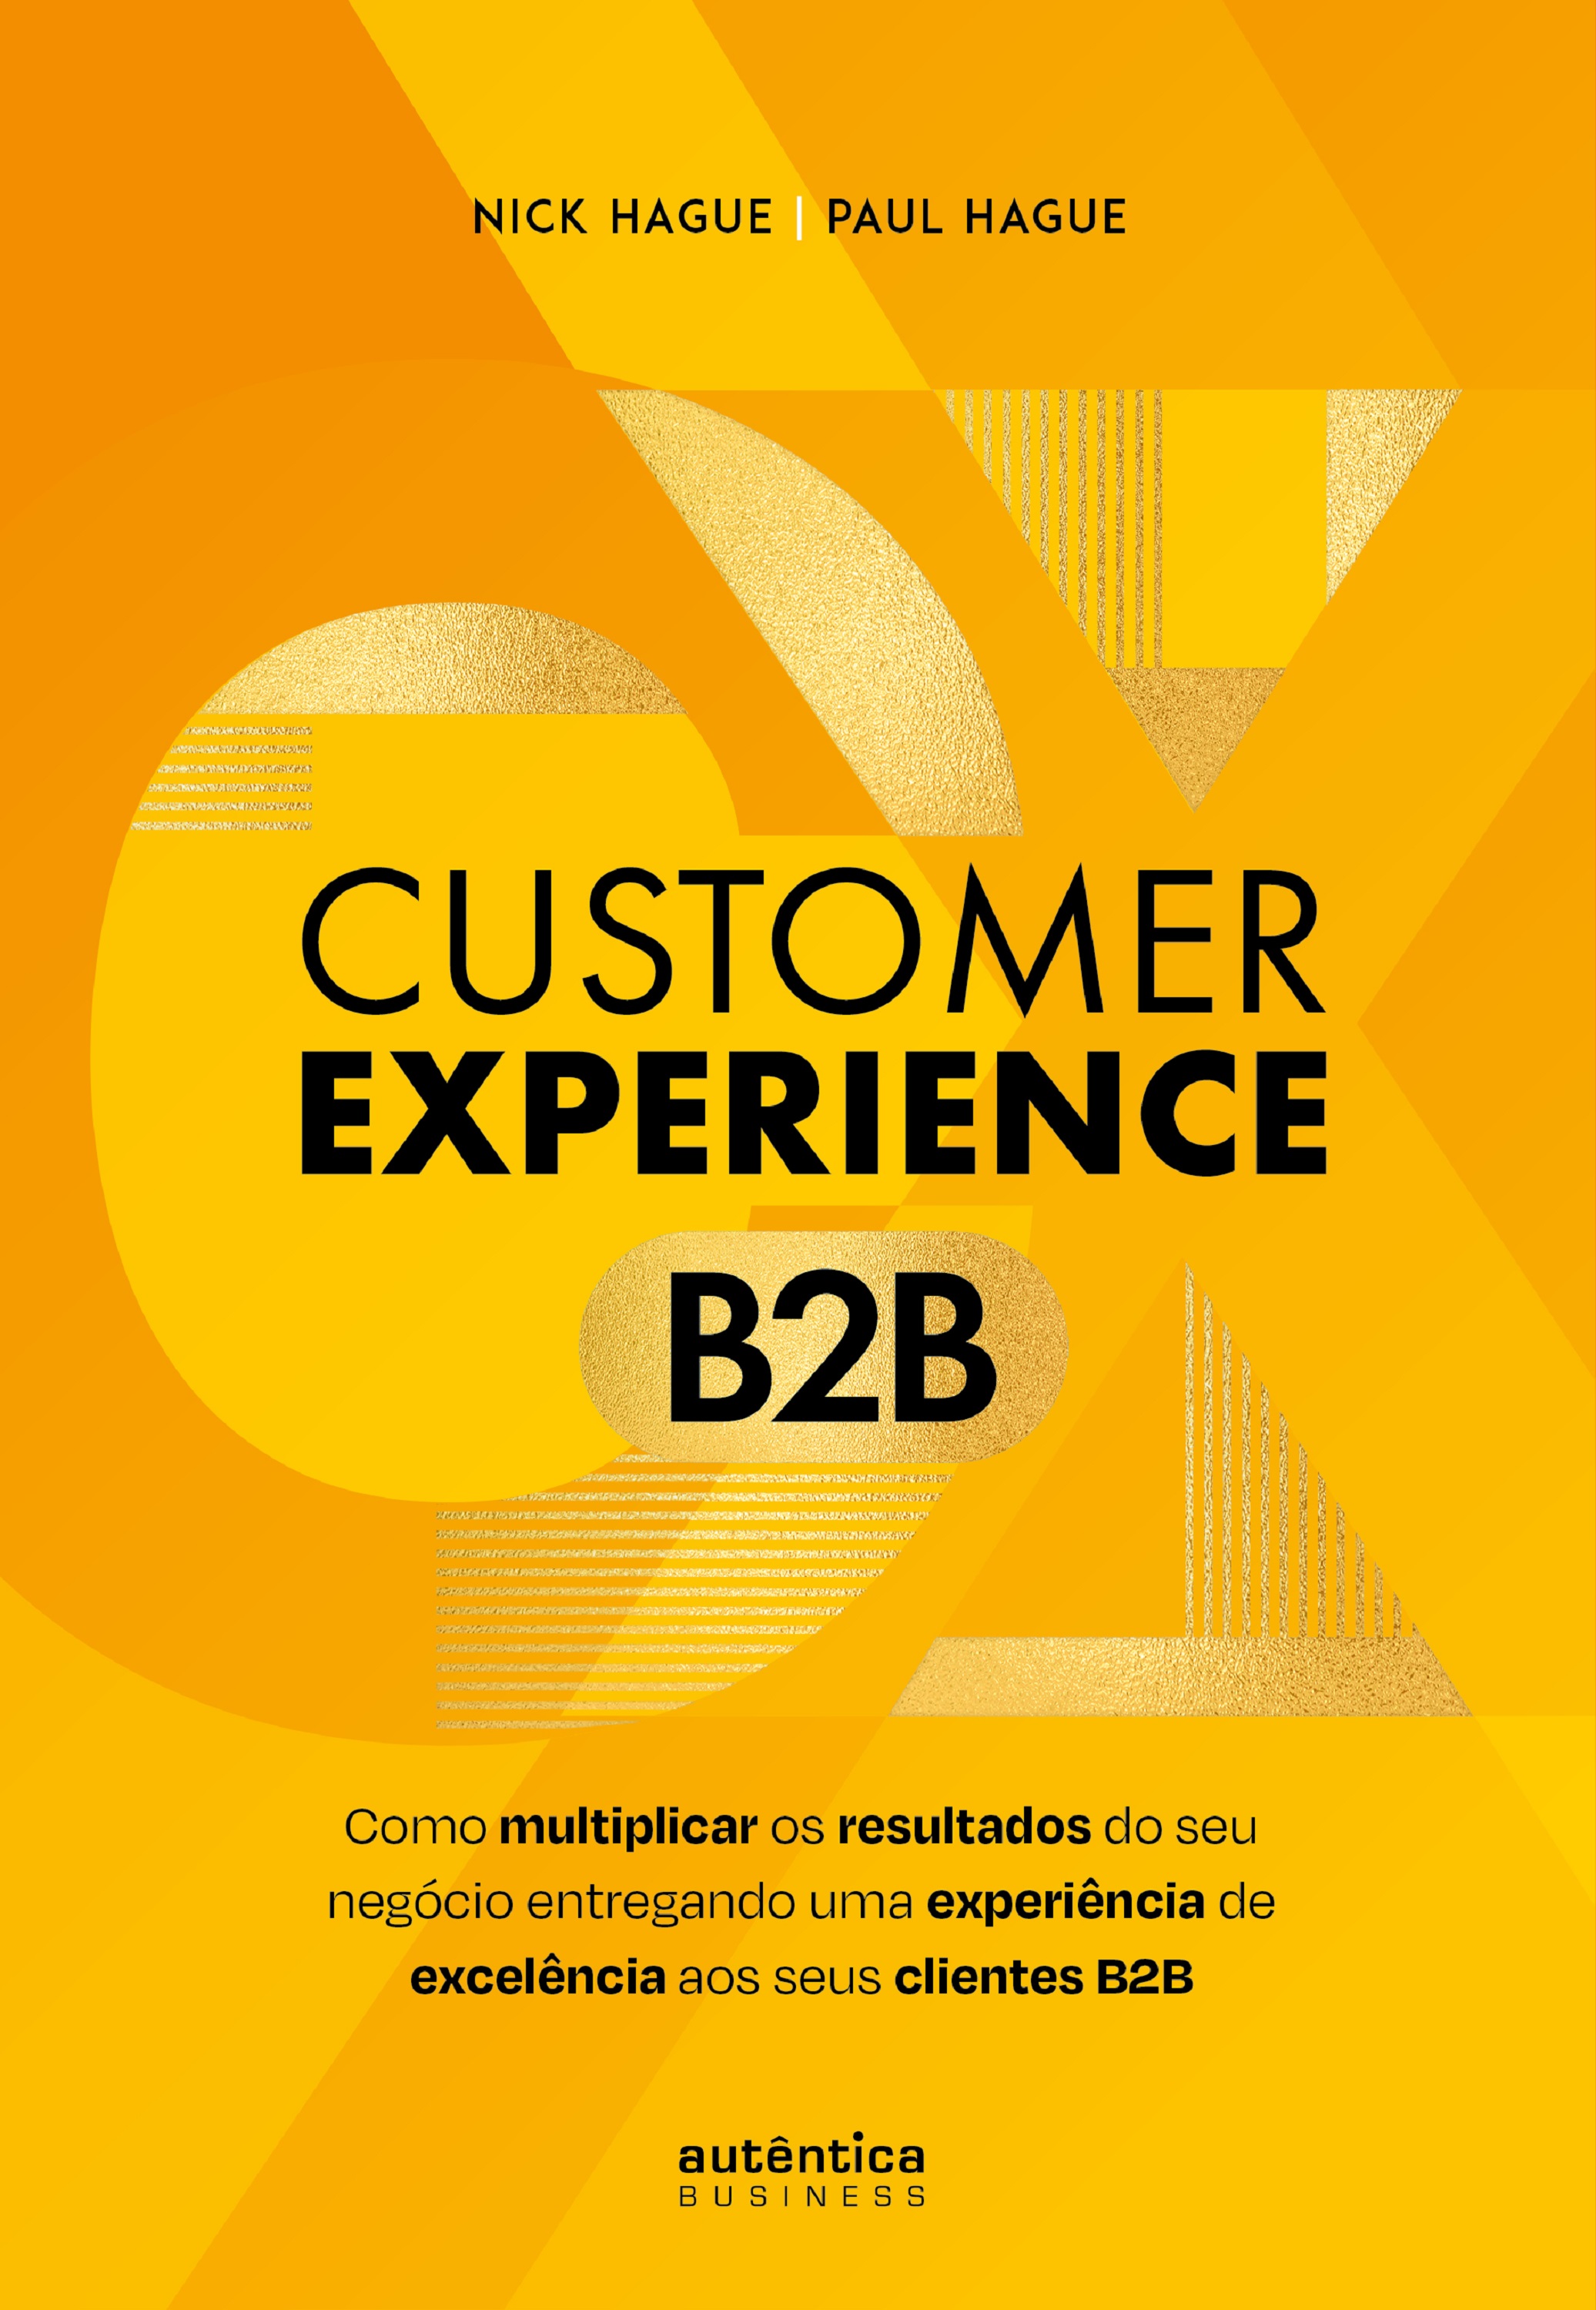 Customer Experience B2B: Como multiplicar o resultado do seu negócio entregando uma experiência de excelência aos seus clientes B2B